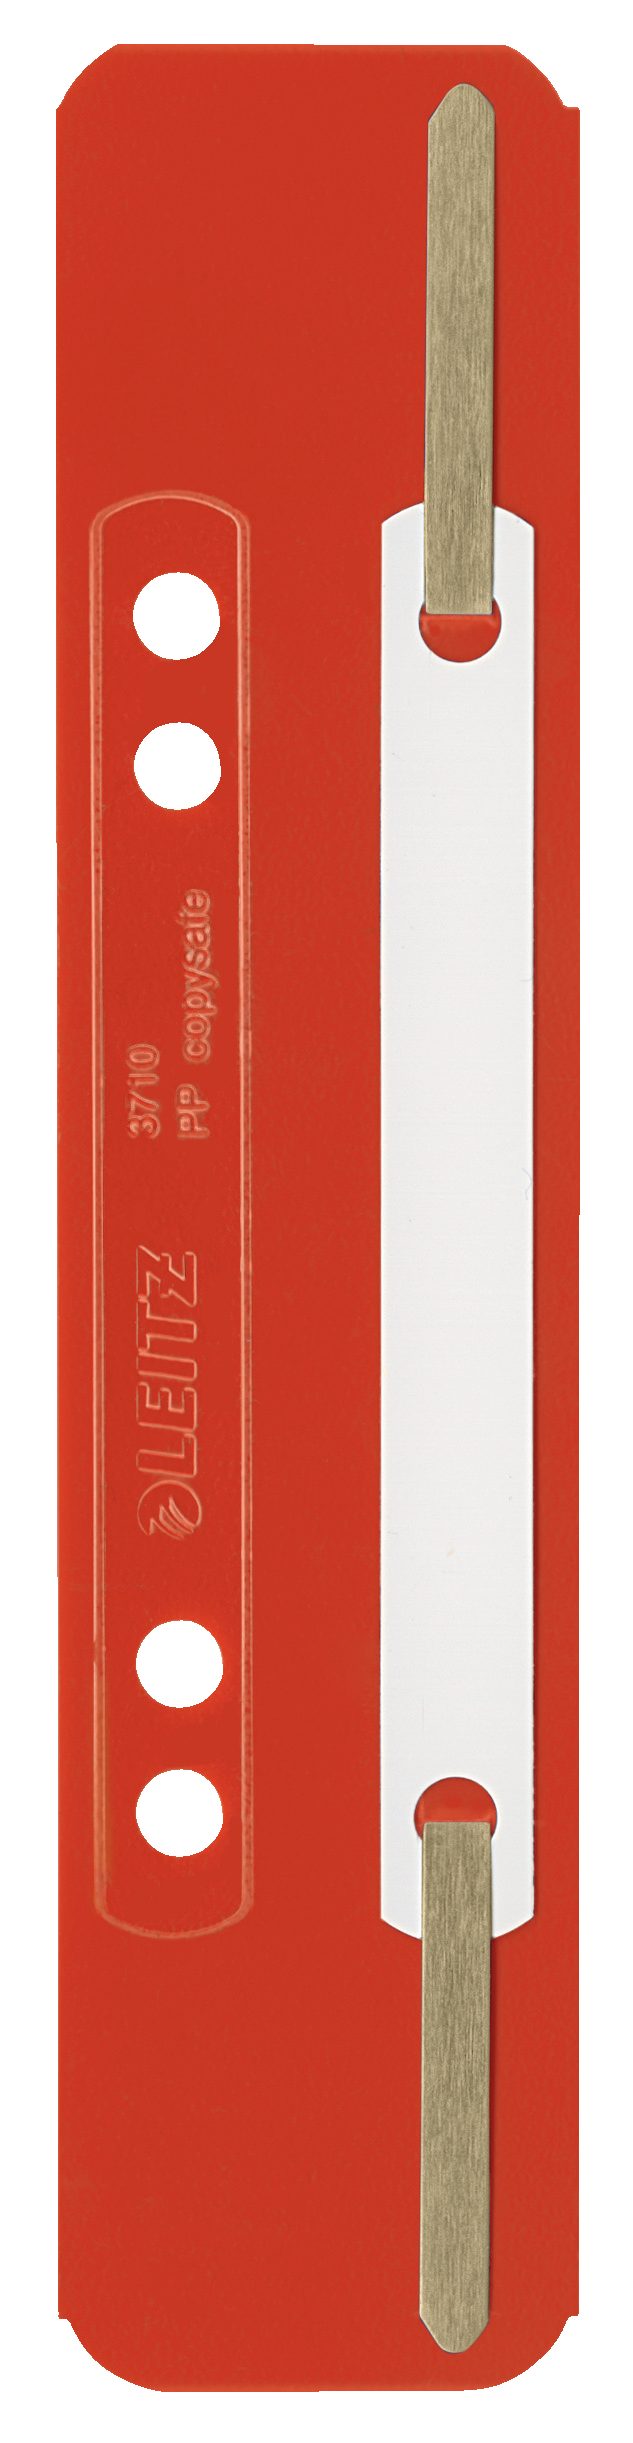 LEITZ Abheftstreifen Heftstreifen kurz PP 25 Stk. Kunststoffdeckleiste  3710-00-25, mit Lochung 6 + 8 cm, Aufreihband aus Metall